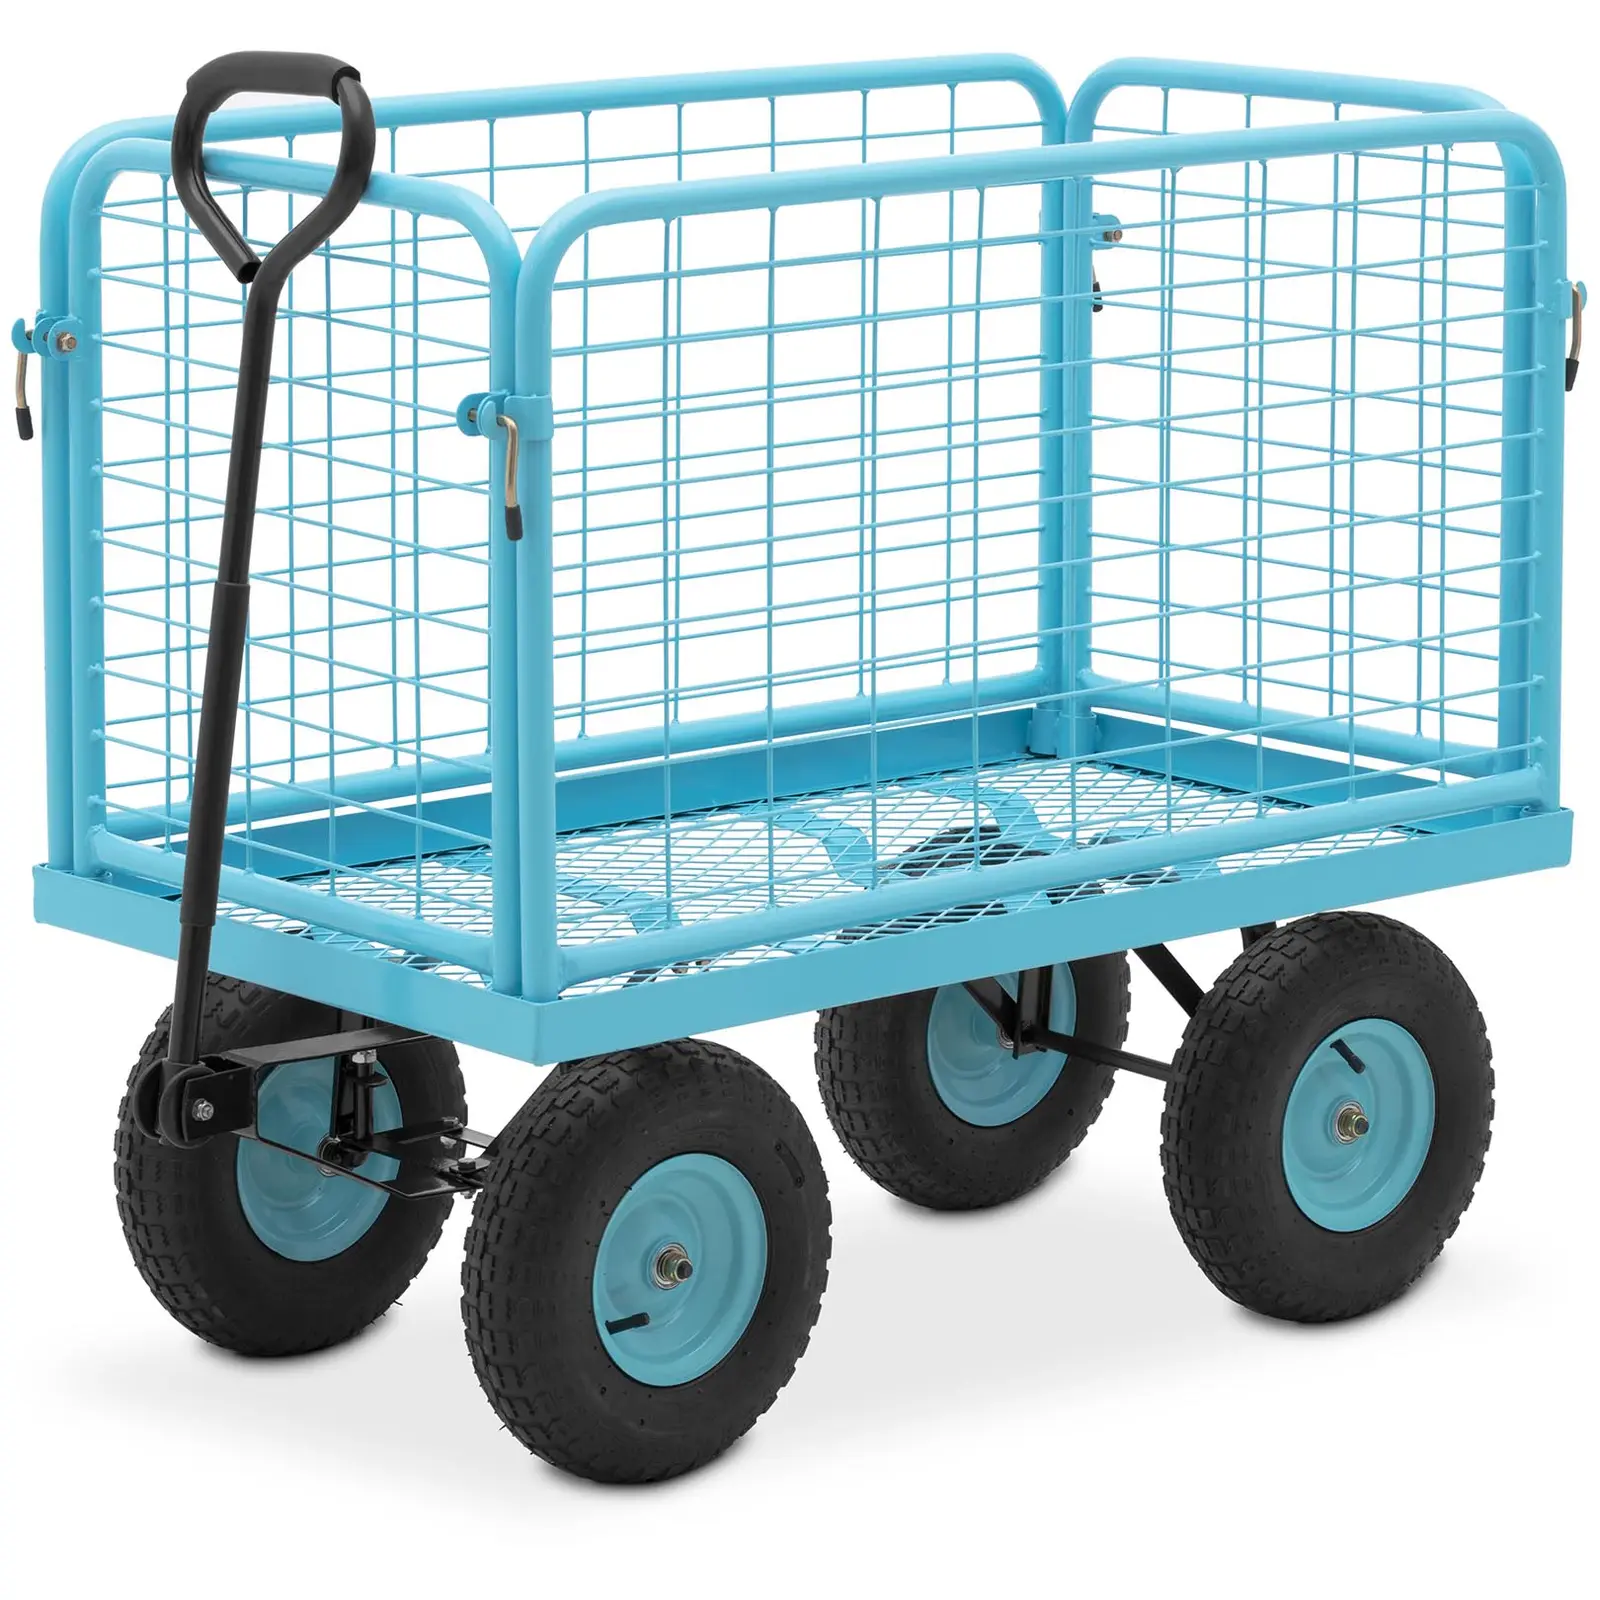 Chariot de jardin - 400 kg - barrières latérales amovibles